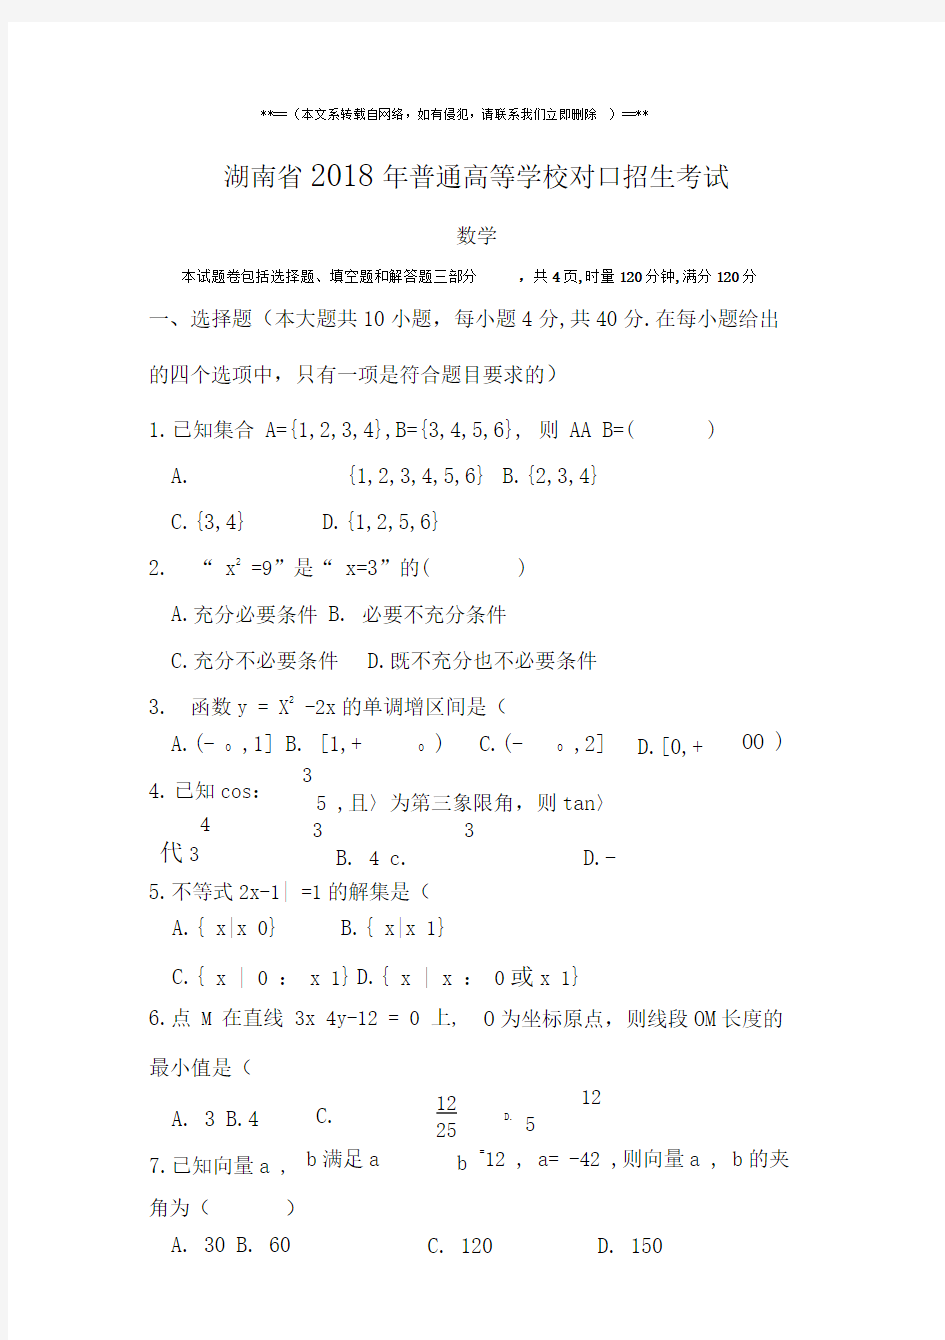 湖南省2018年高考对口招生数学考试真题带答案